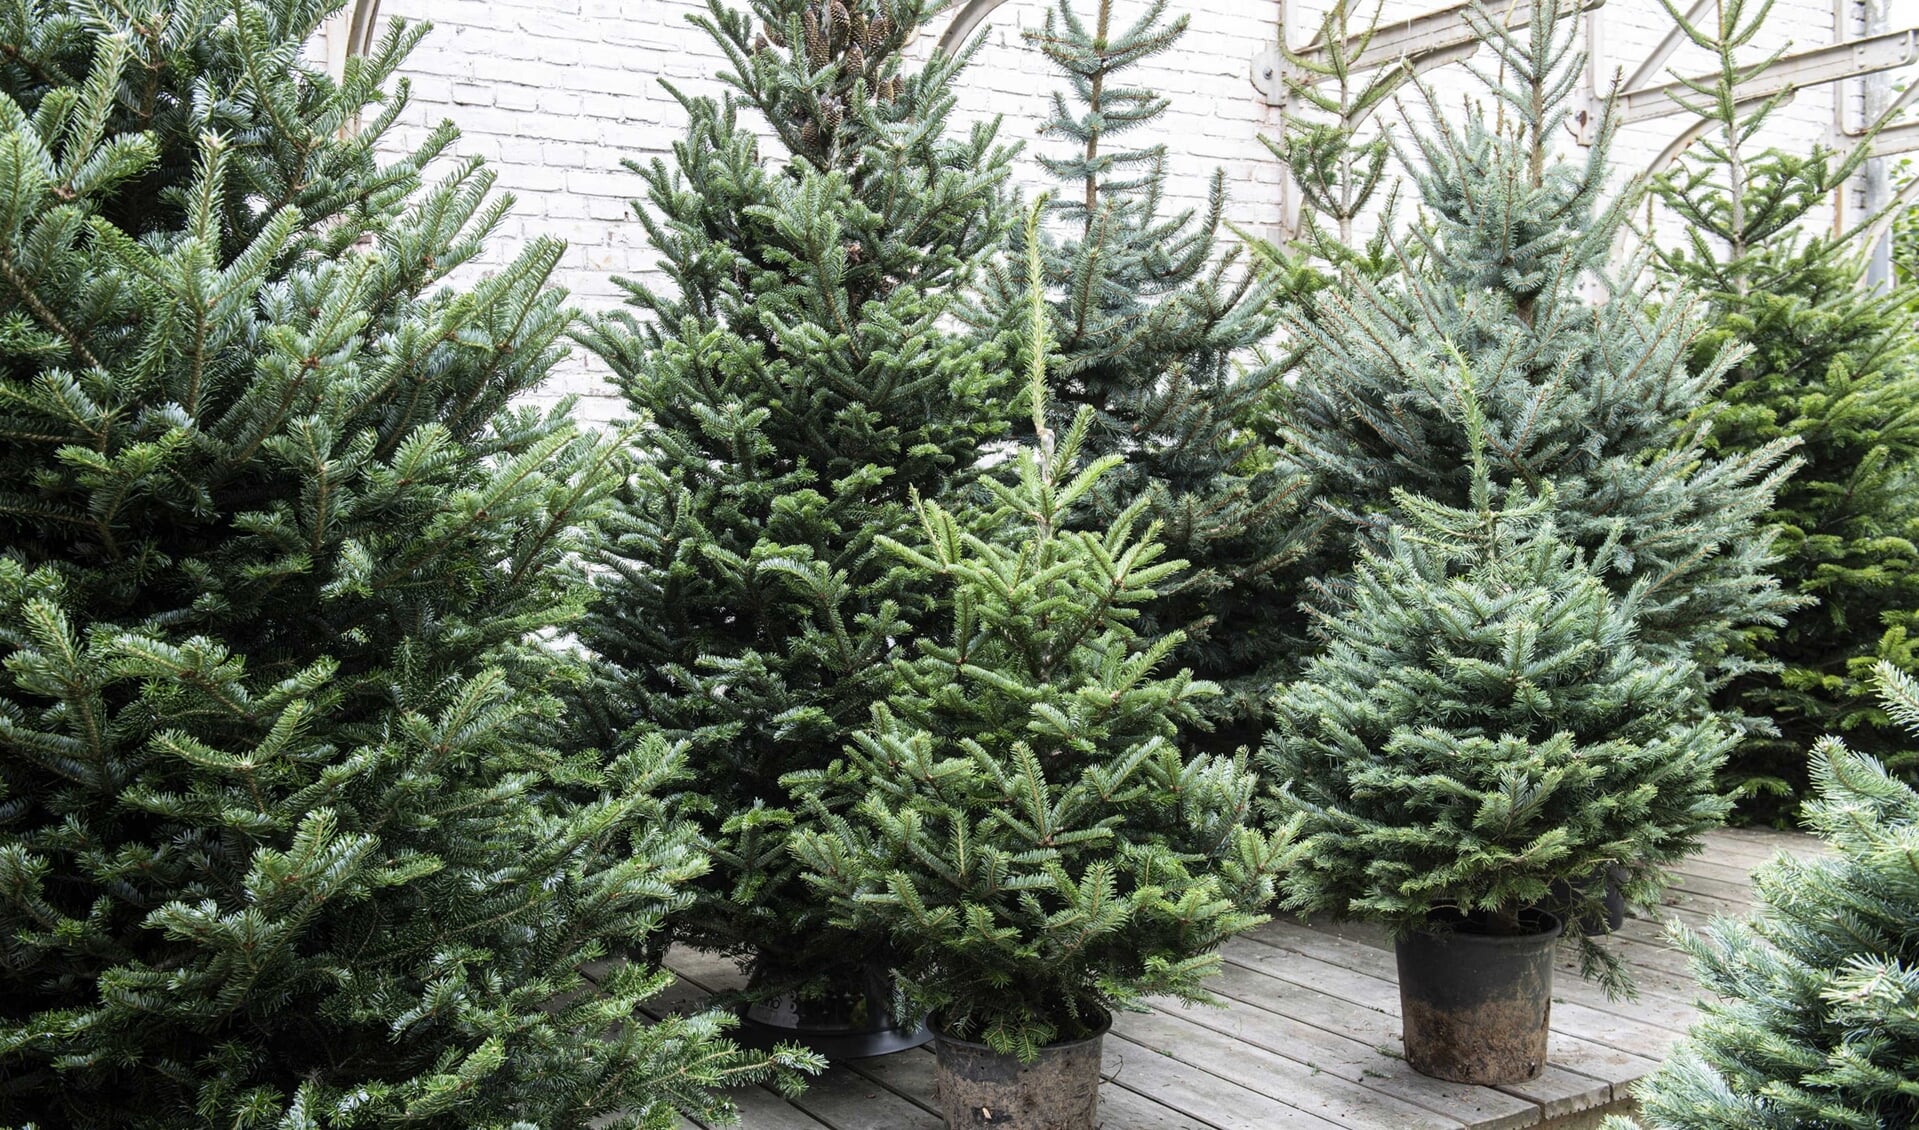 Heeft u minimaal 25 kerstbomen verzameld? Dan komt de gemeente ze graag halen.